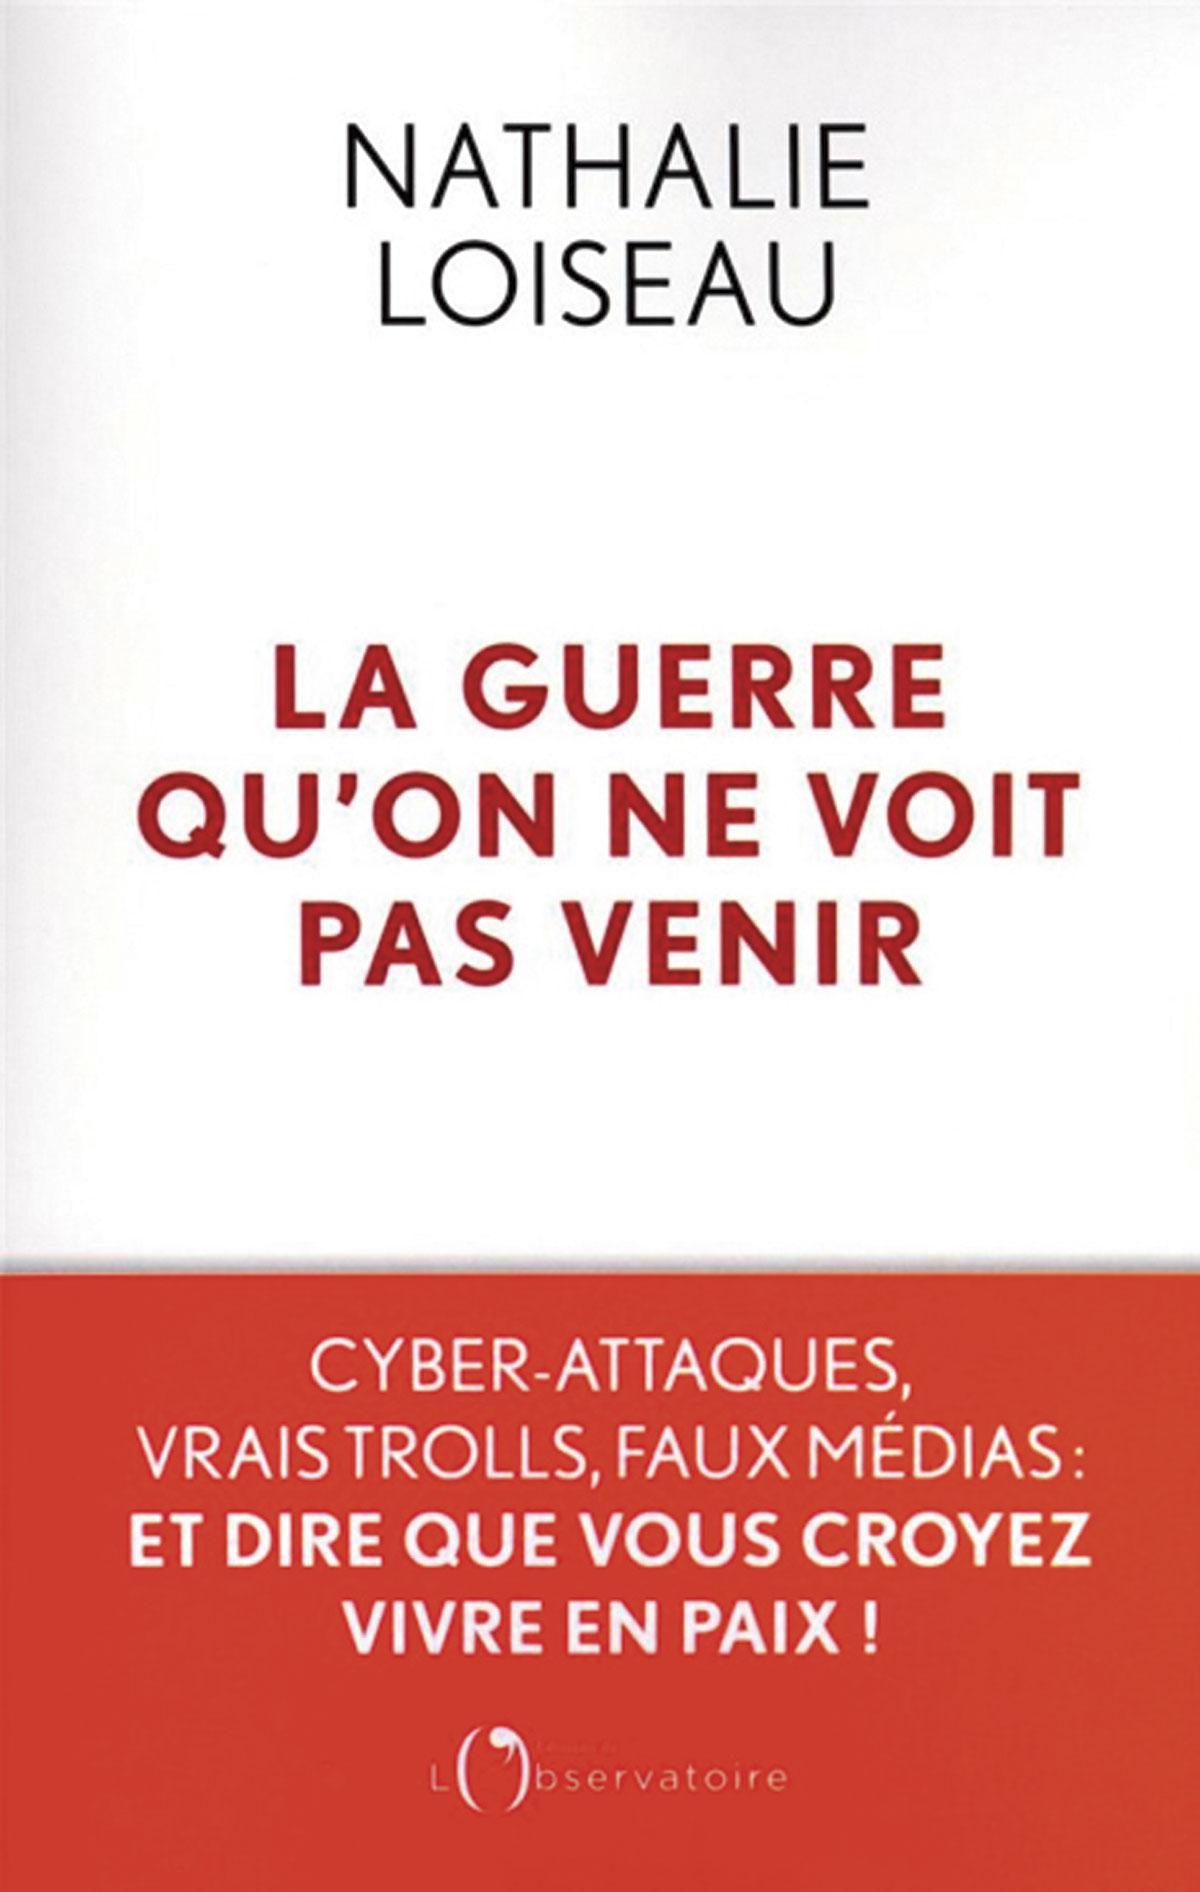 (1) La Guerre qu’on ne voit pas venir. Cyber-attaques, vrais trolls, faux médias: et dire que vous croyez vivre en paix!, par Nathalie Loiseau, L’Observatoire, 560 p.